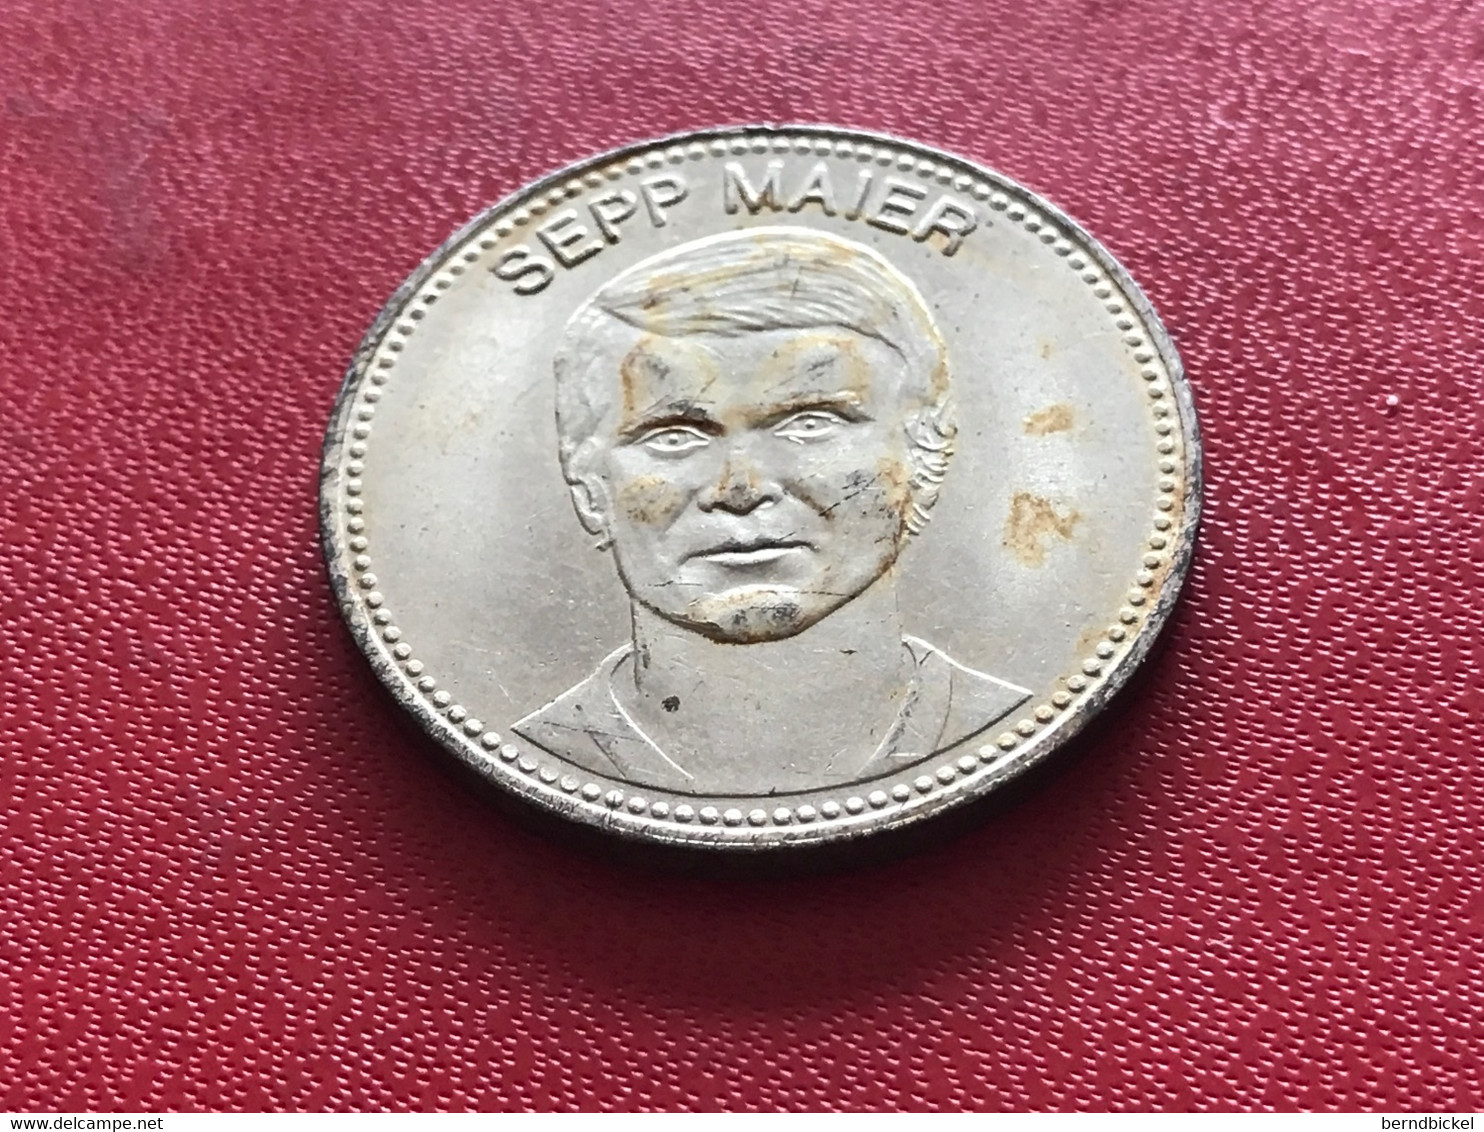 Münze Medaille Shell Mexiko 70 Sepp Maier - Souvenirmunten (elongated Coins)